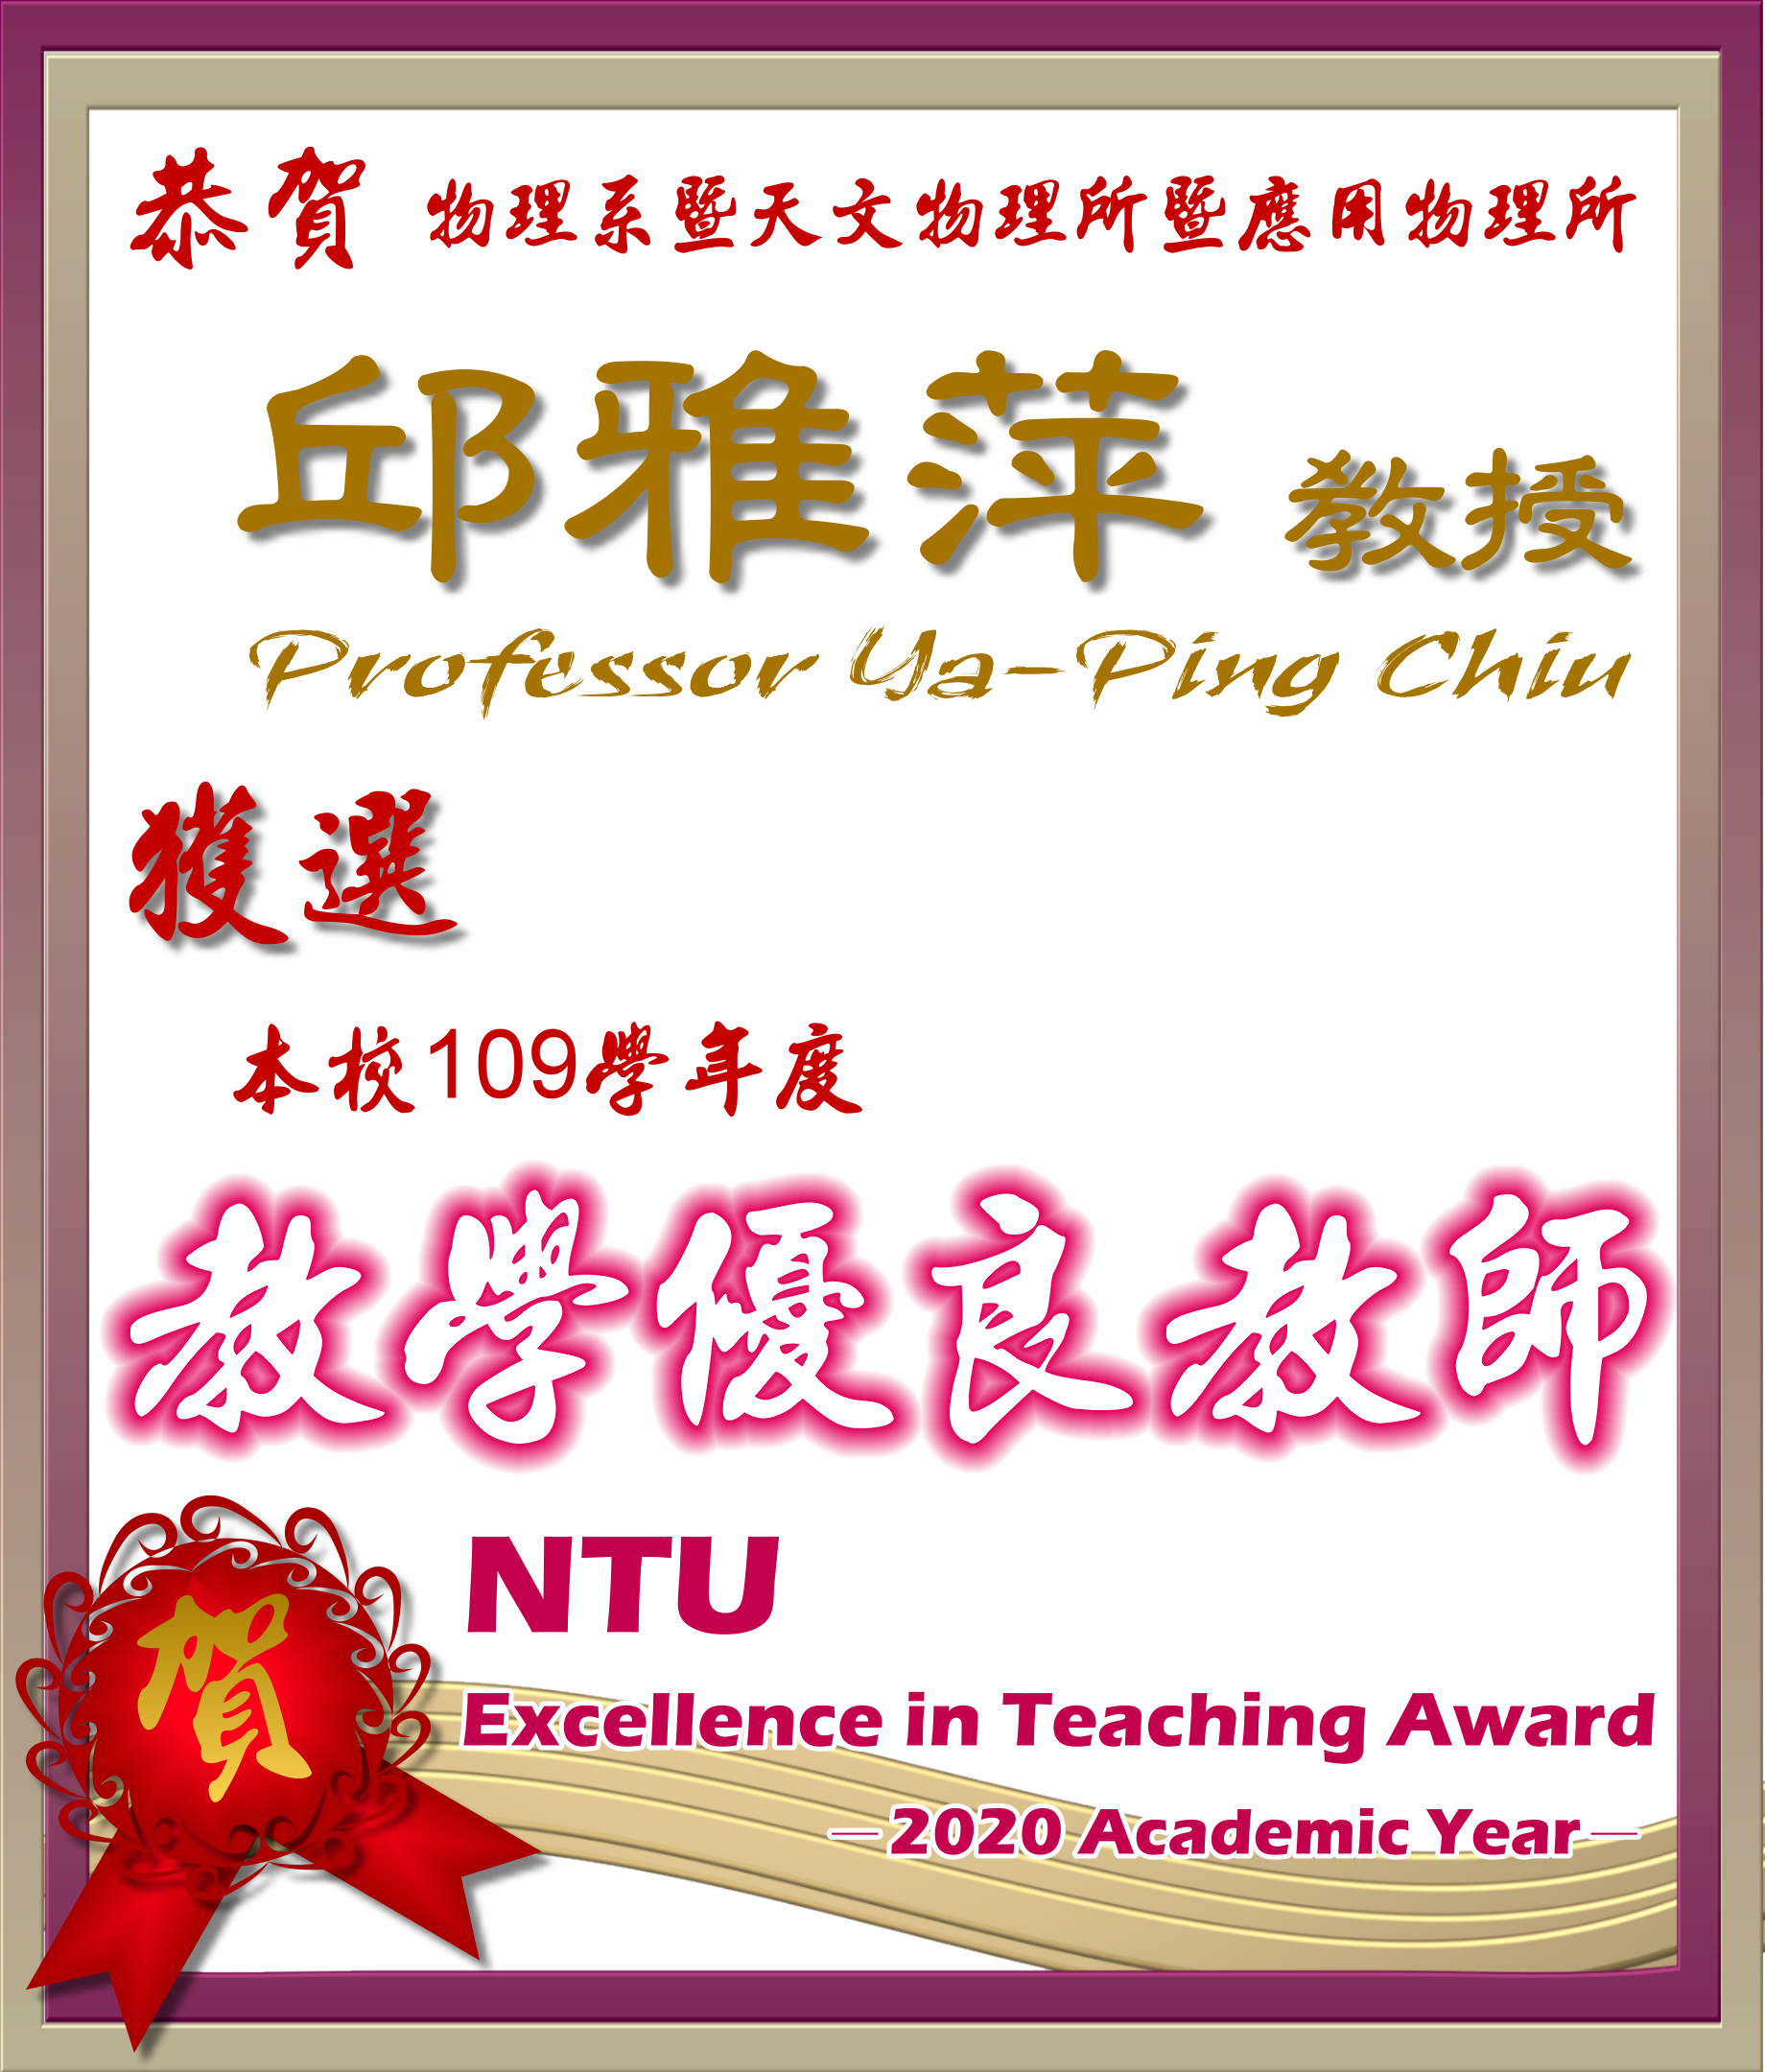 《賀》本系 邱雅萍 教授 Prof. Ya-Ping Chiu 獲選 109學年度《教學優良教師》(NTU Excellence in Teaching Award)